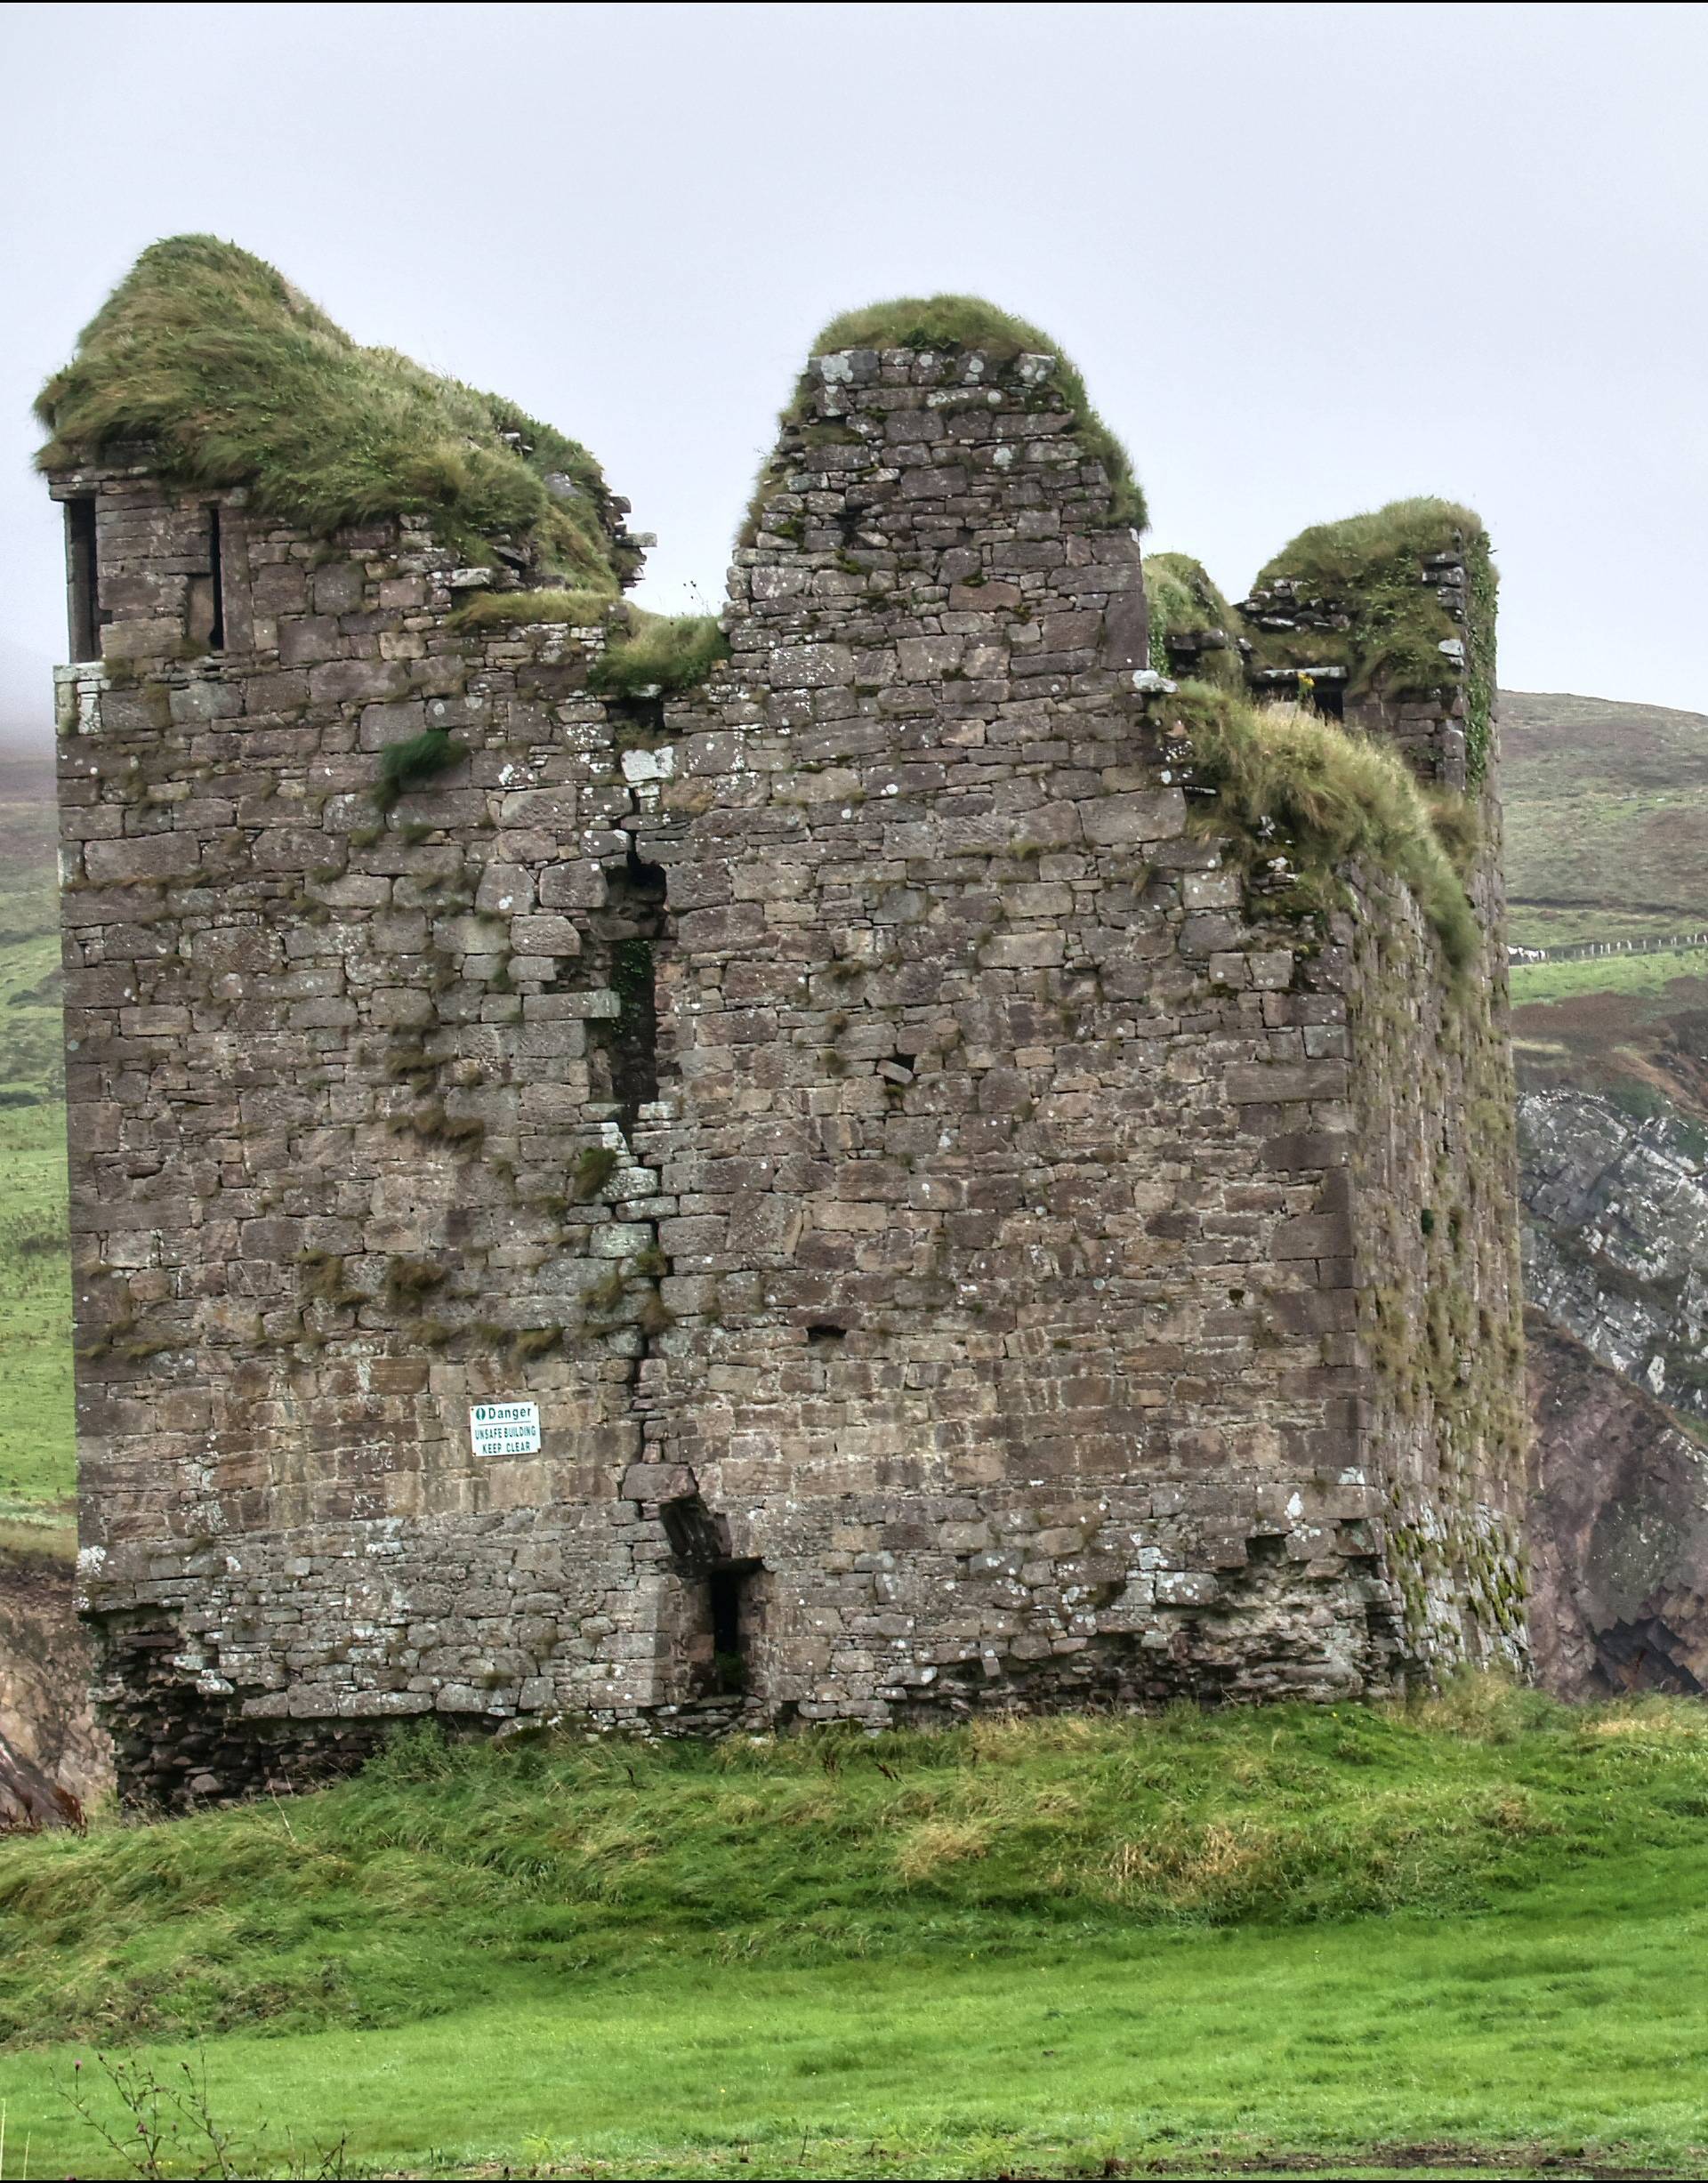 Spektakularni napušteni dvorci daju mrvice iz nestale prošlosti